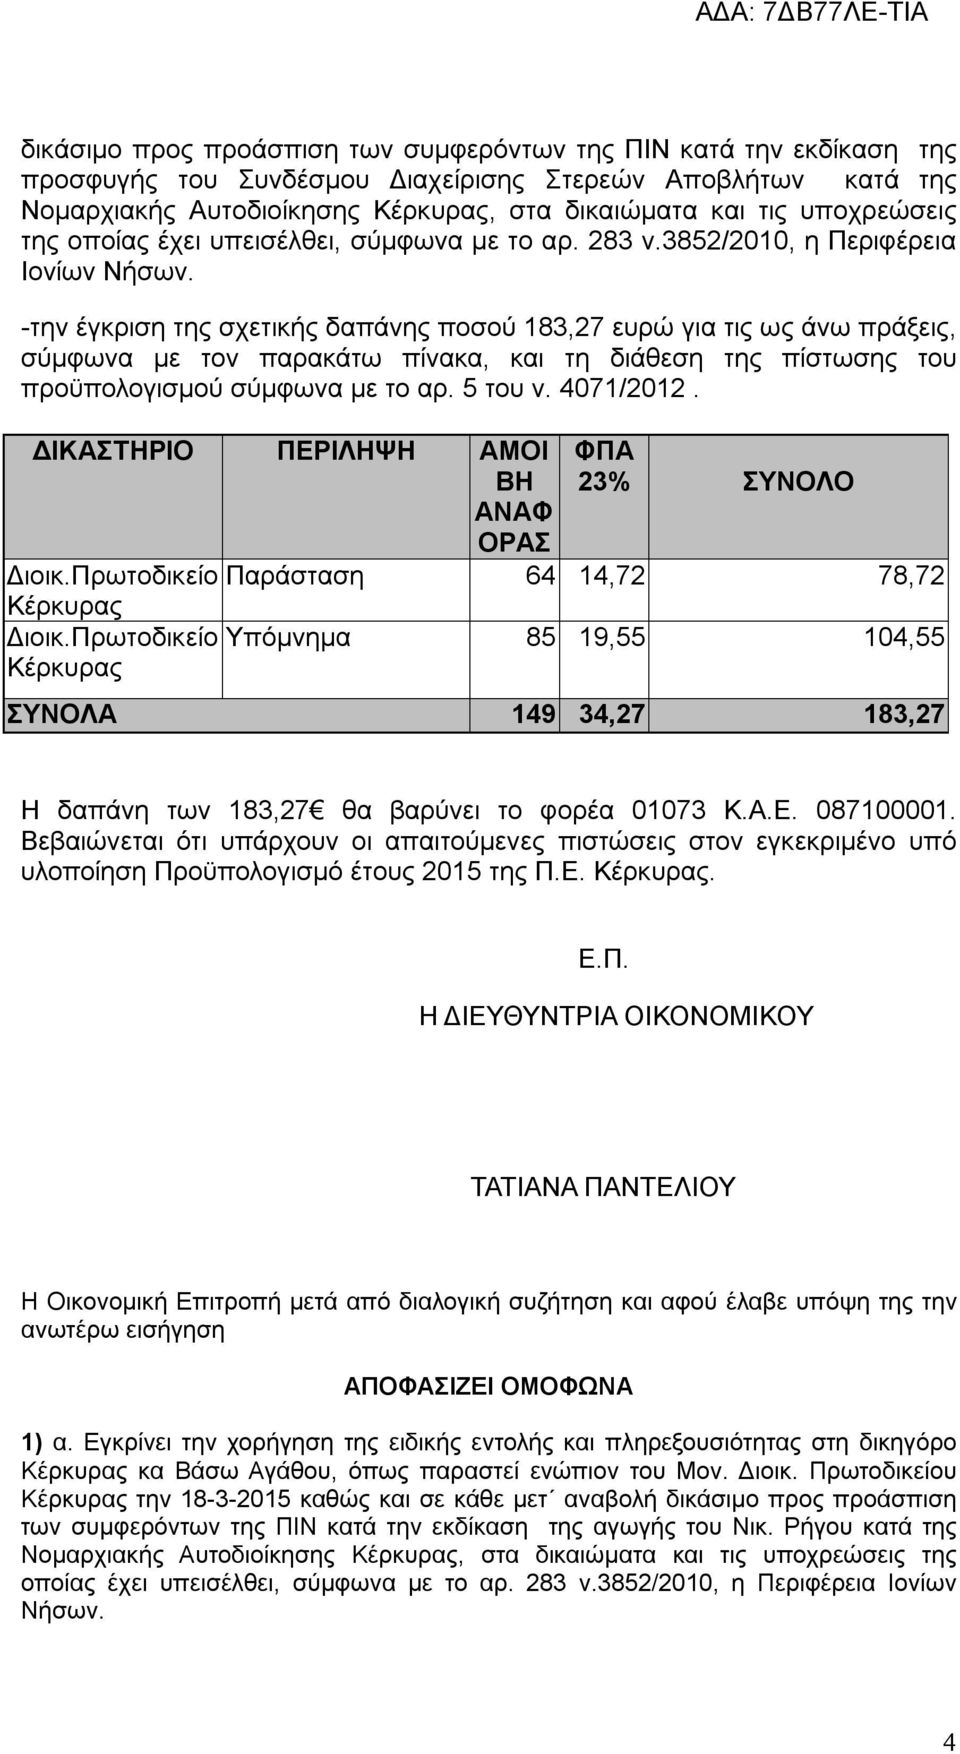 -την έγκριση της σχετικής δαπάνης ποσού 183,27 ευρώ για τις ως άνω πράξεις, σύμφωνα με τον παρακάτω πίνακα, και τη διάθεση της πίστωσης του προϋπολογισμού σύμφωνα με το αρ. 5 του ν. 4071/2012.